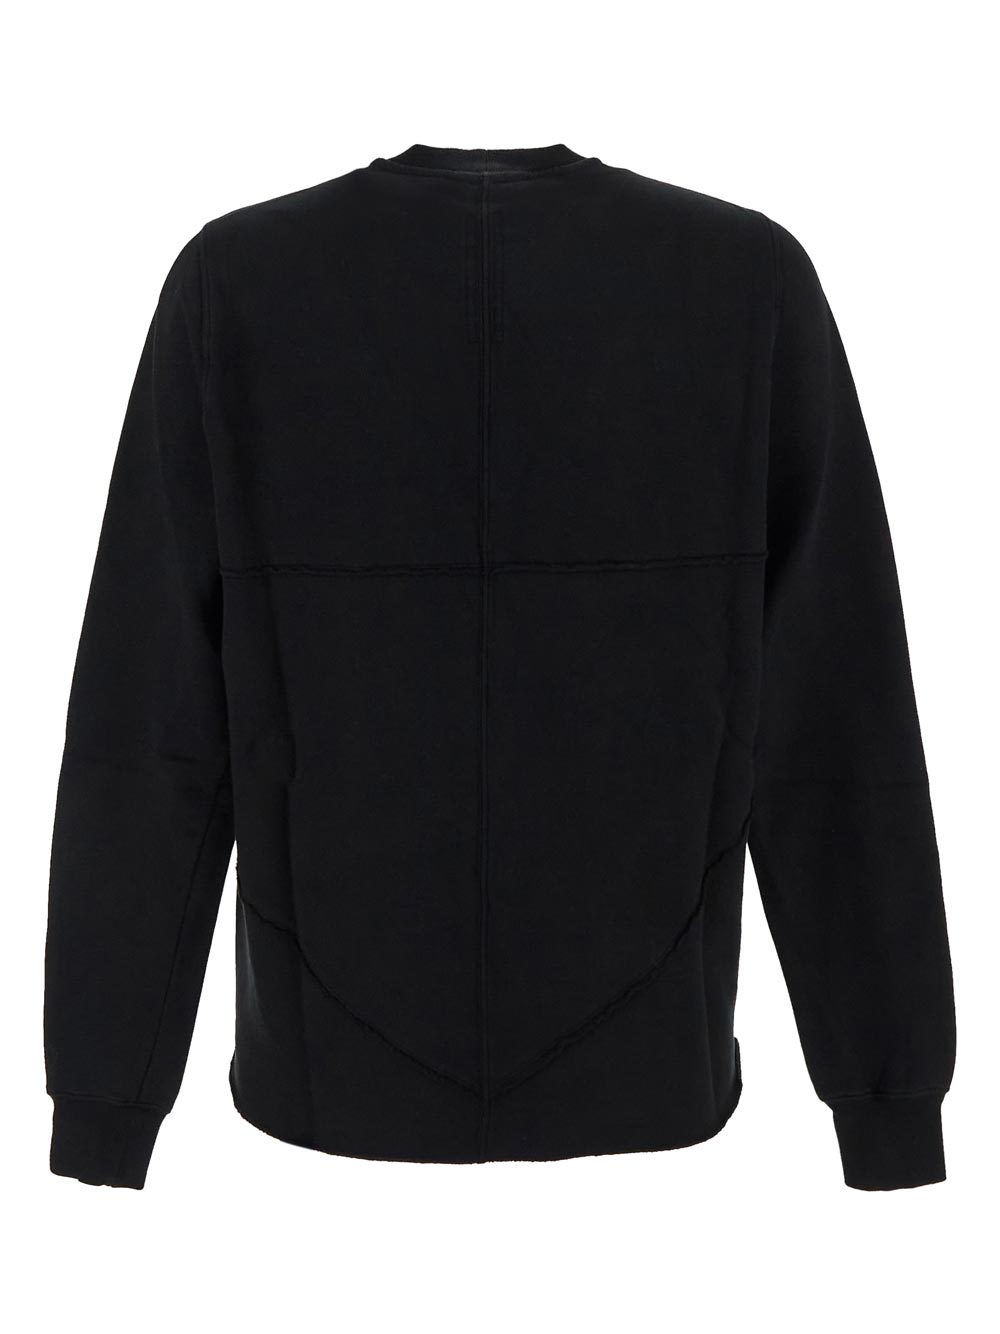 RICK OWENS DRKSHDW Sweatshirt black